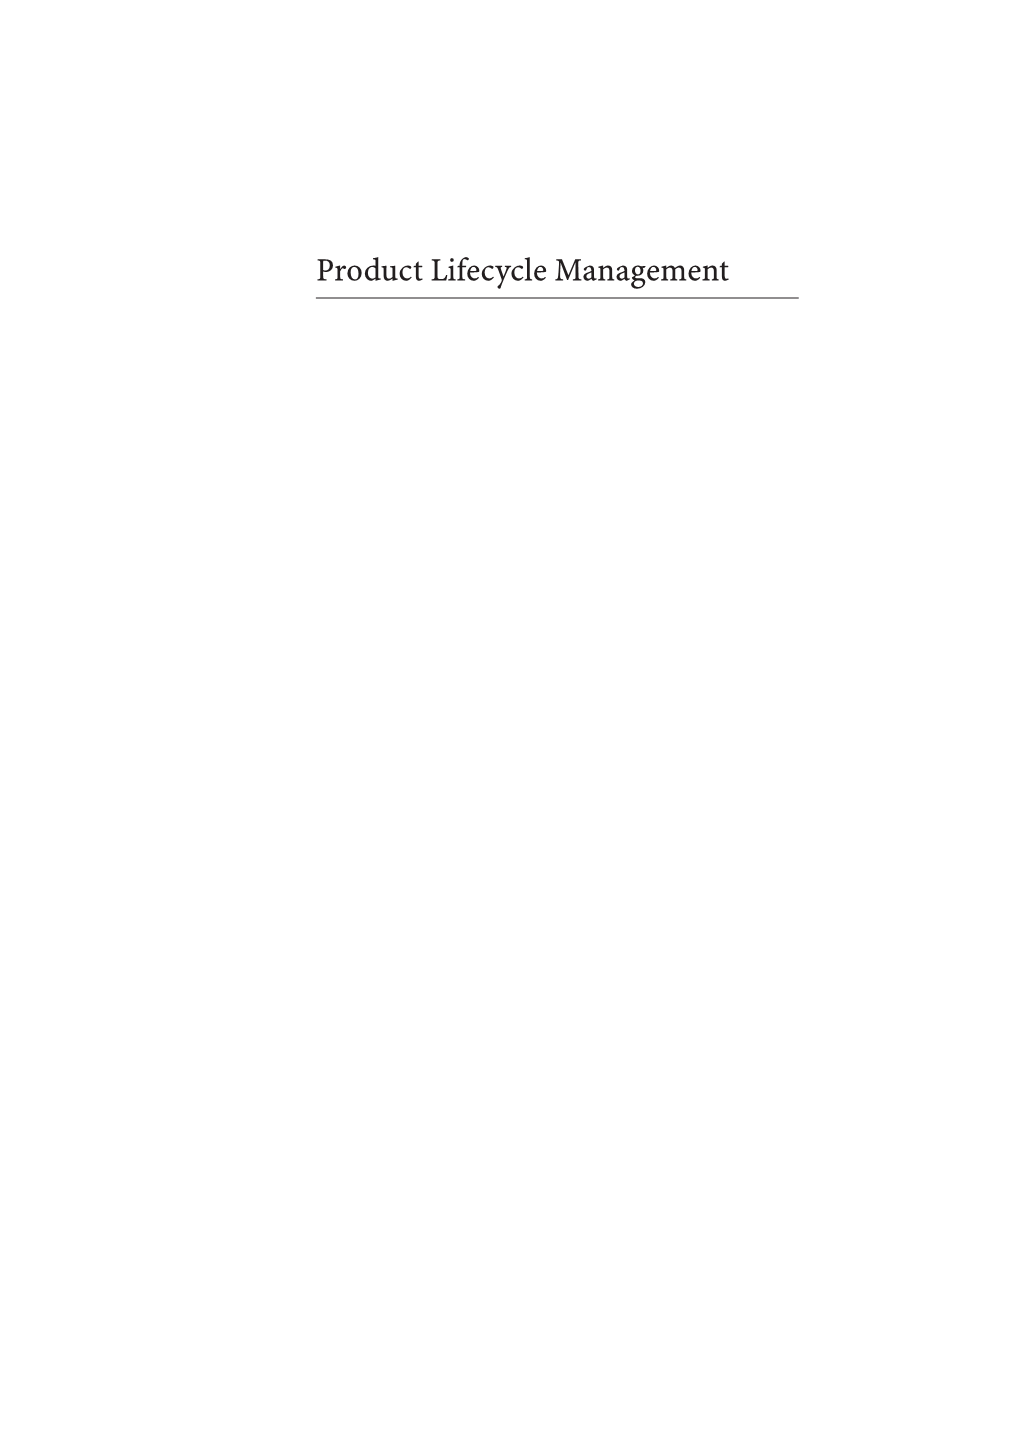 Product Lifecycle Management Antti Saaksvuori • Anselmi Immonen